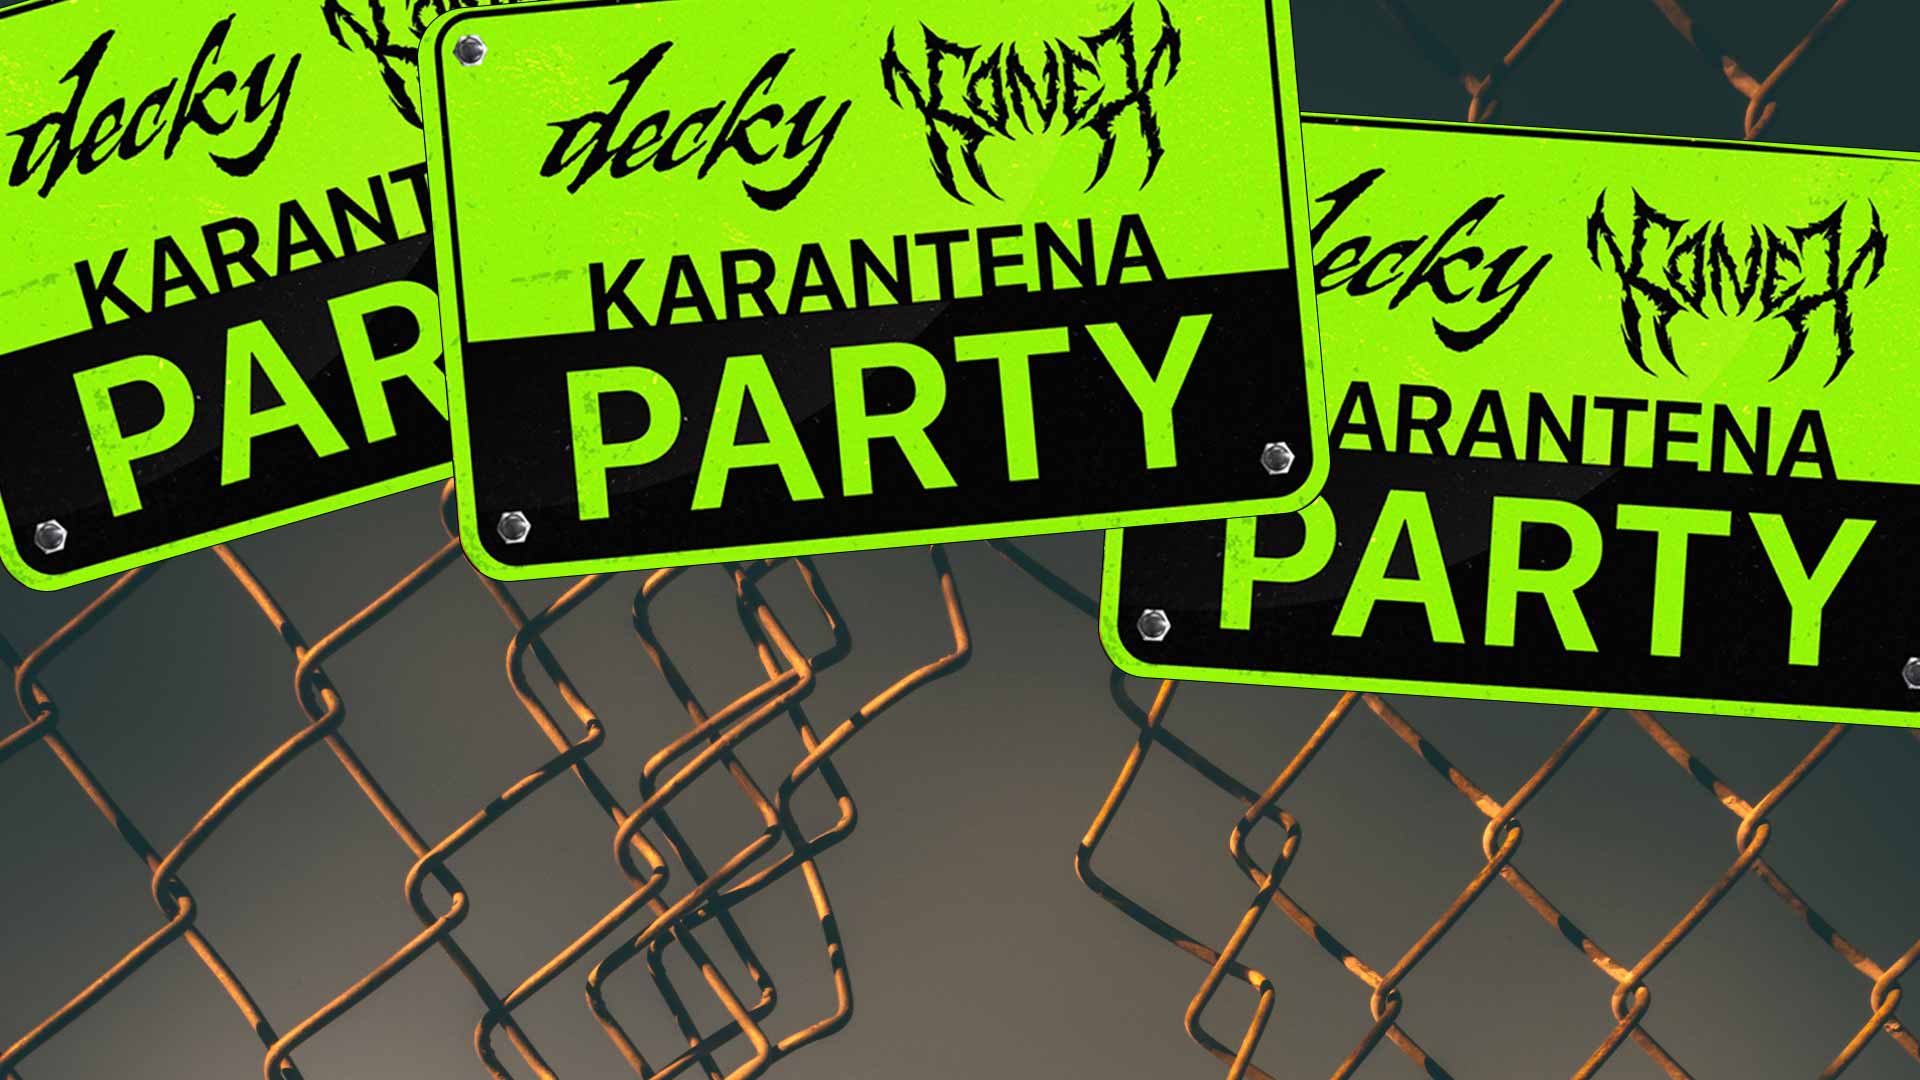 Decky a Konex dnes odstartují Karantena Party. Kdo všechno se na EP objeví?